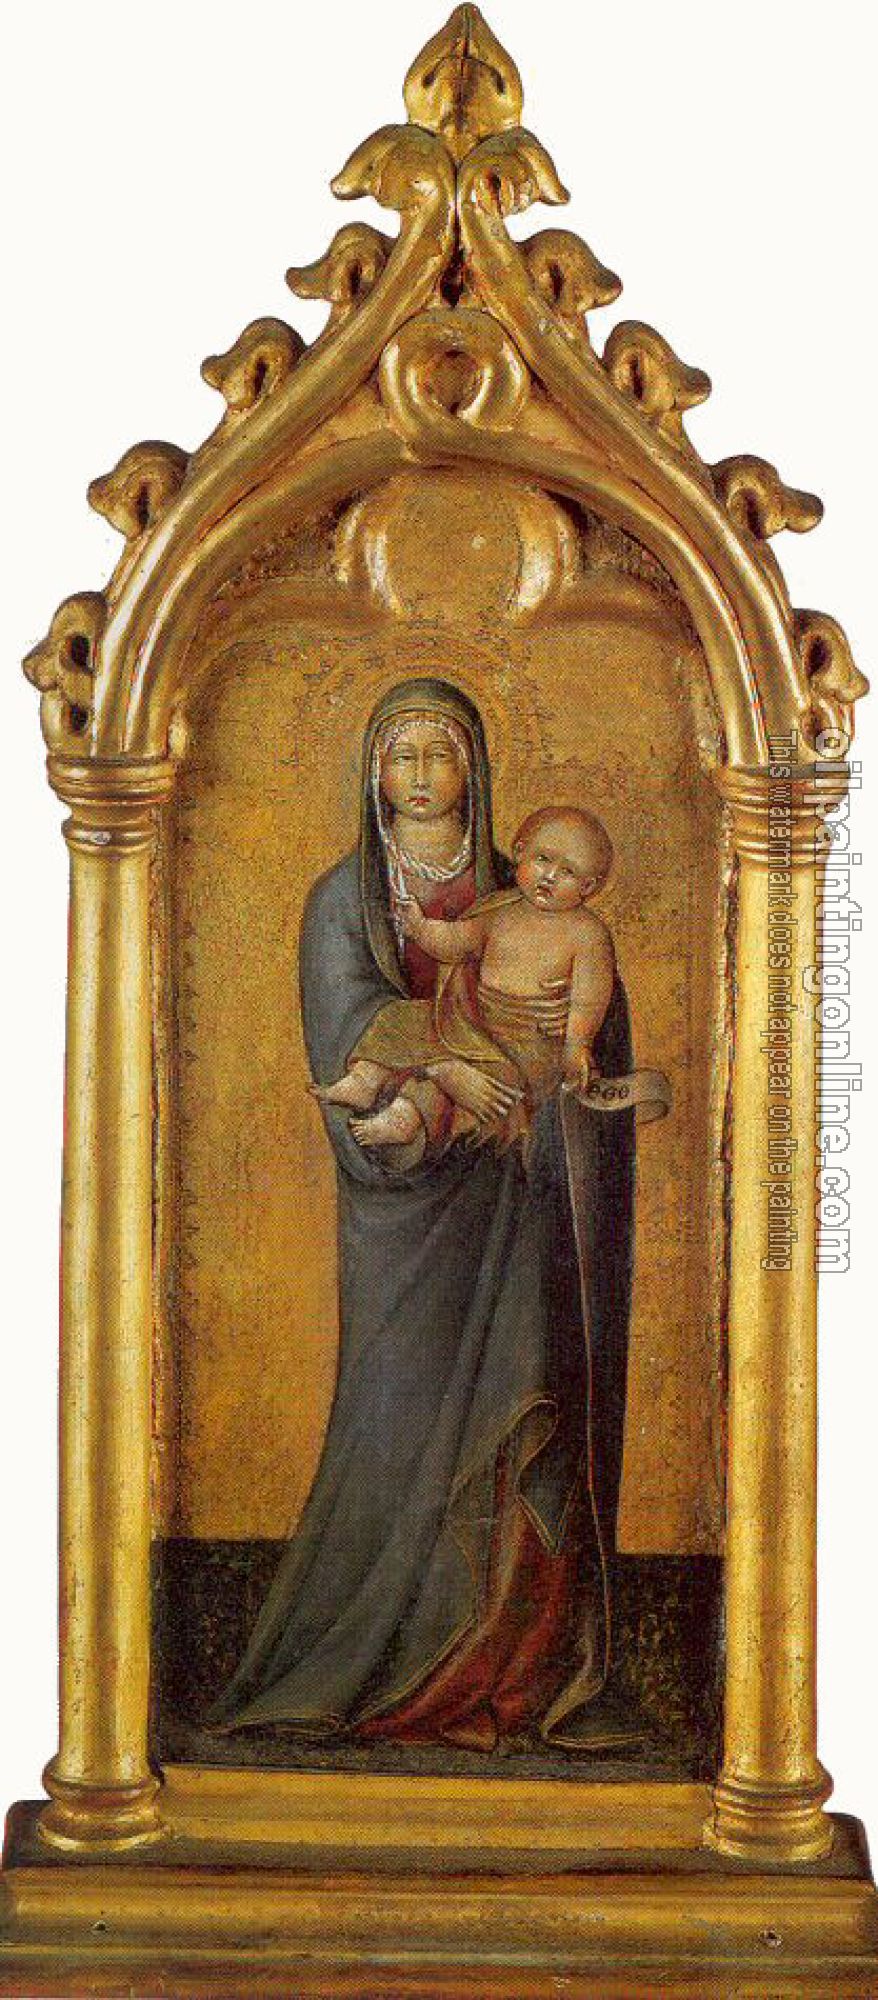 Paolo, Giovanni di - The Virgin and Child